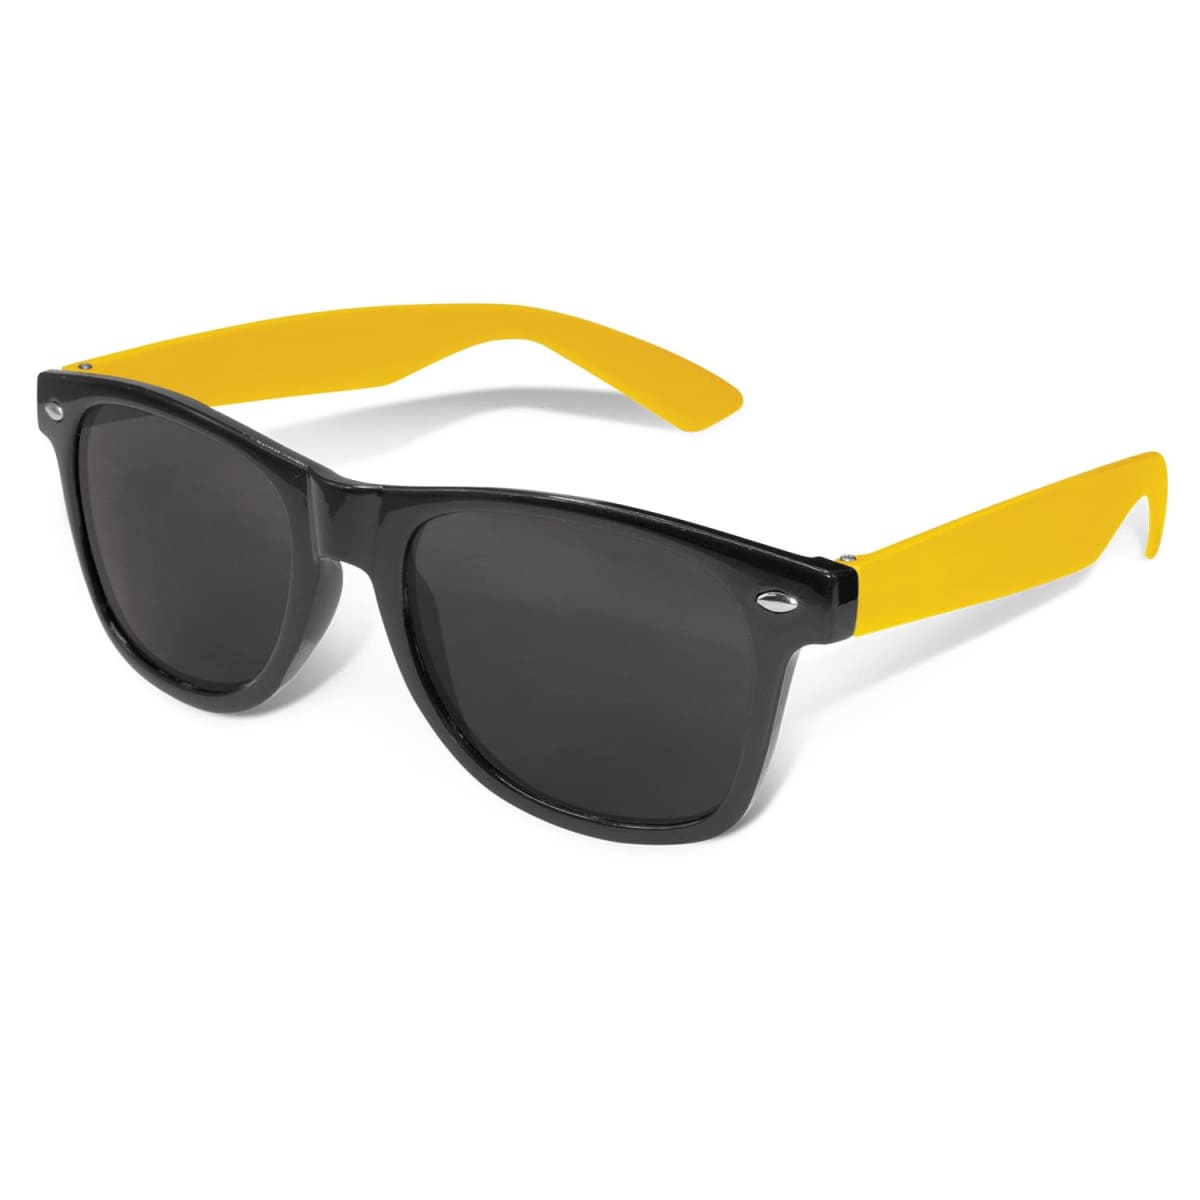 Malibu Premium Sunglasses - Black Frame